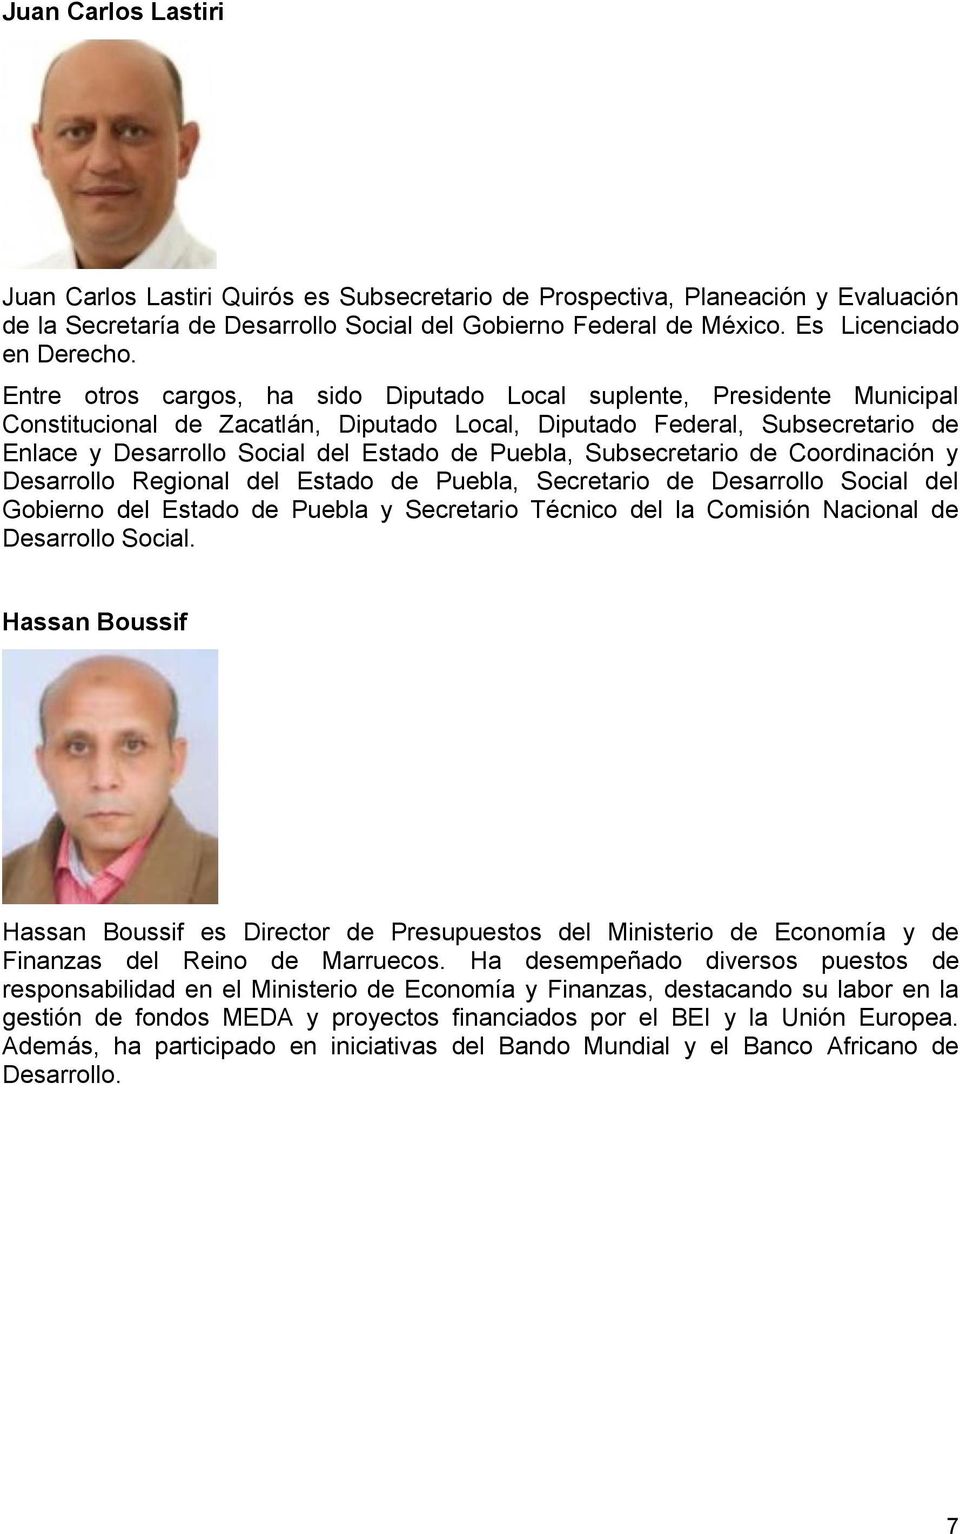 Puebla, Subsecretario de Coordinación y Desarrollo Regional del Estado de Puebla, Secretario de Desarrollo Social del Gobierno del Estado de Puebla y Secretario Técnico del la Comisión Nacional de